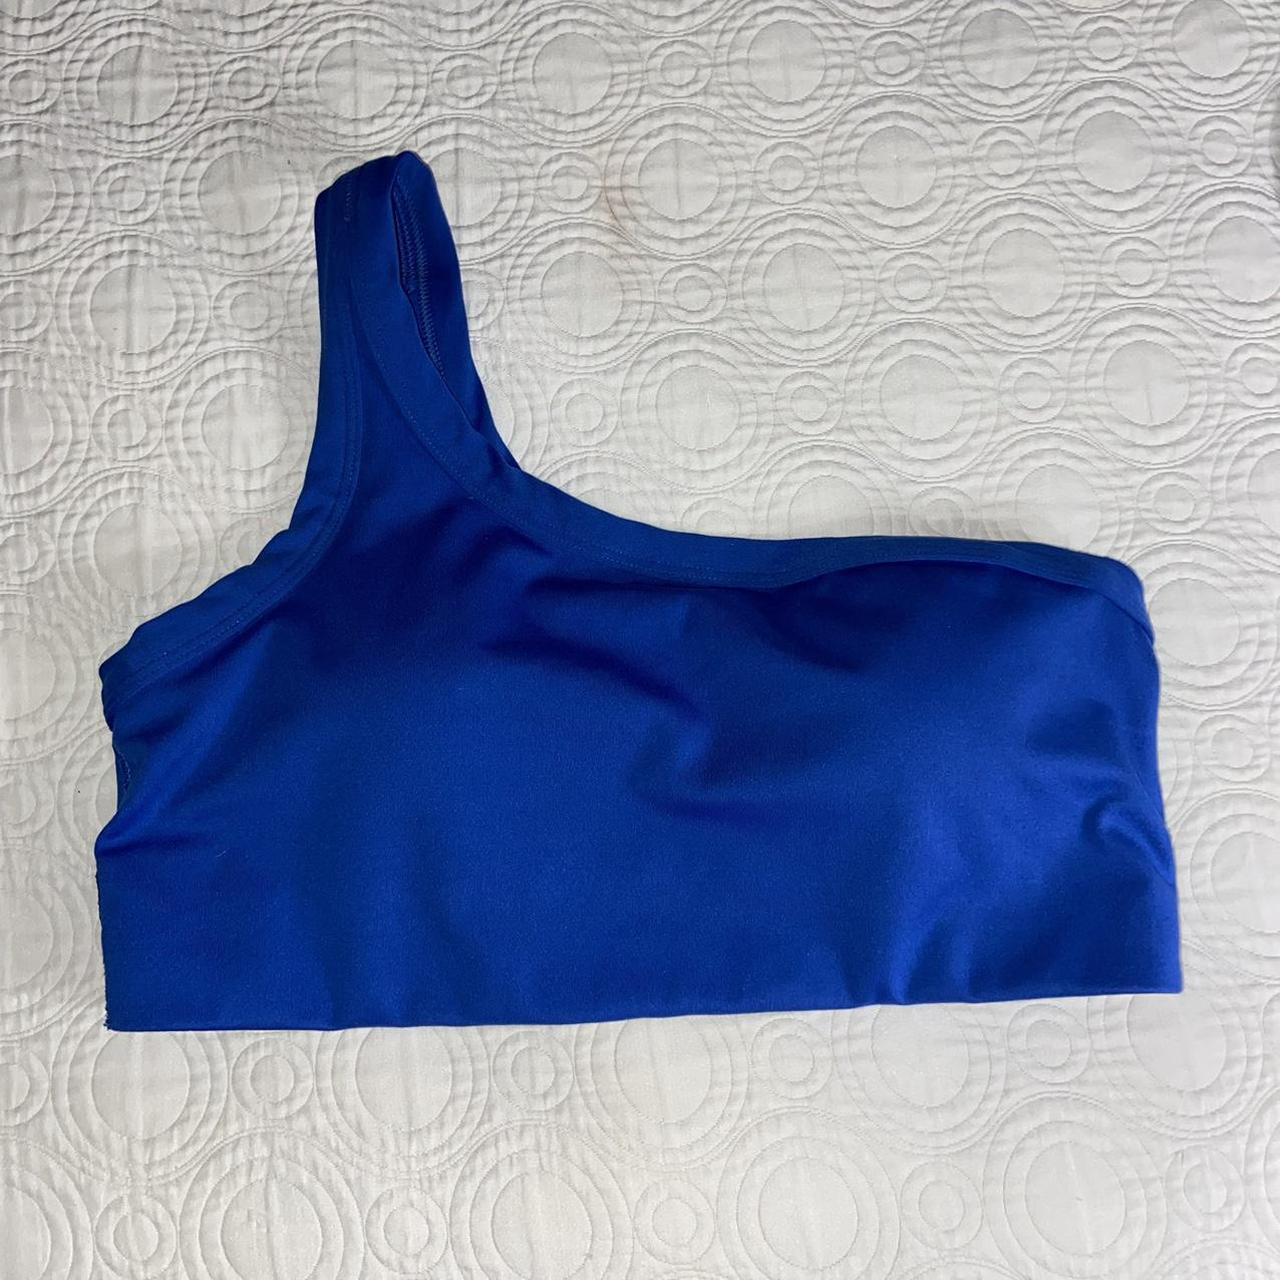 Blue all in motion sports bra 🦋 Size L! In great - Depop